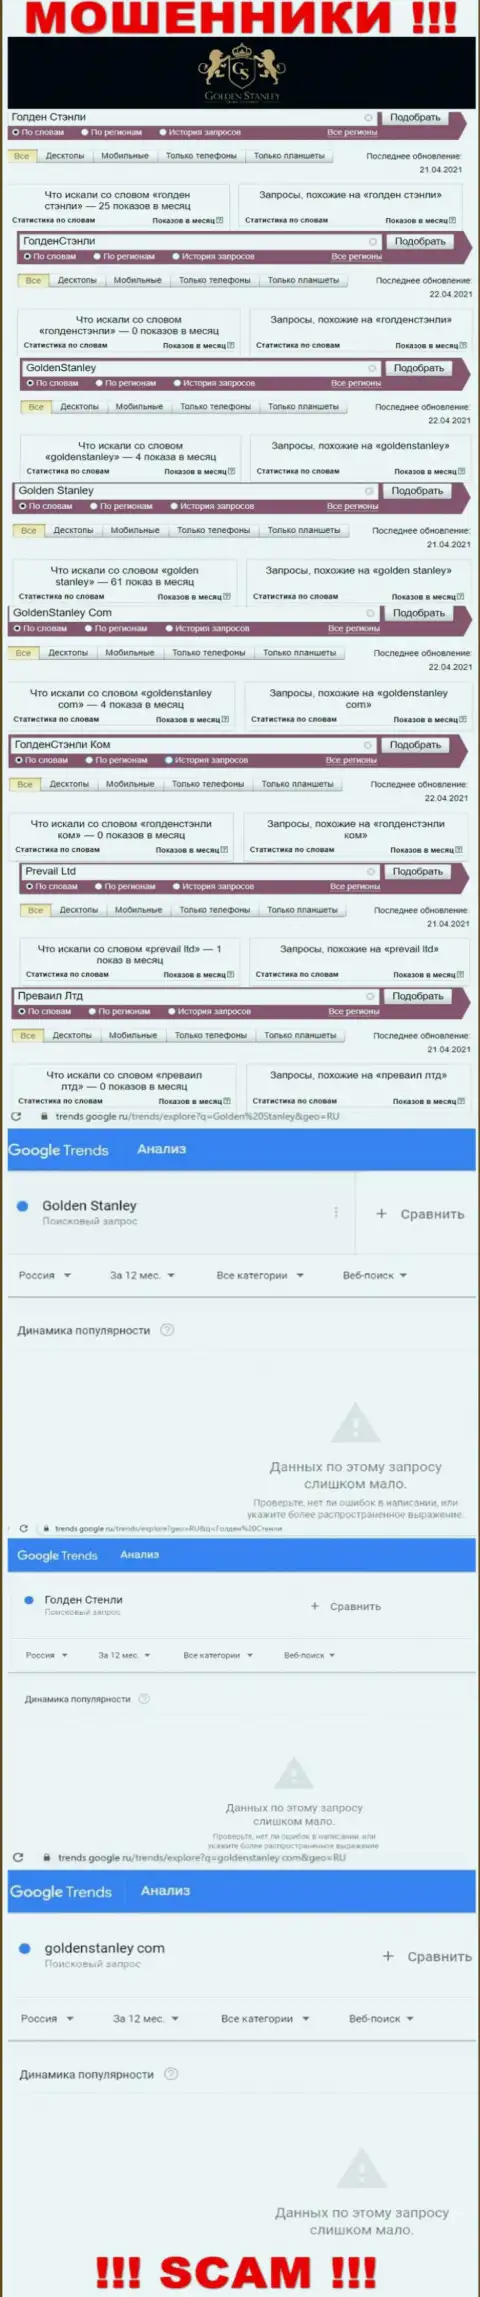 Статистика internet запросов в поисковиках сети касательно лохотронщиков Golden Stanley